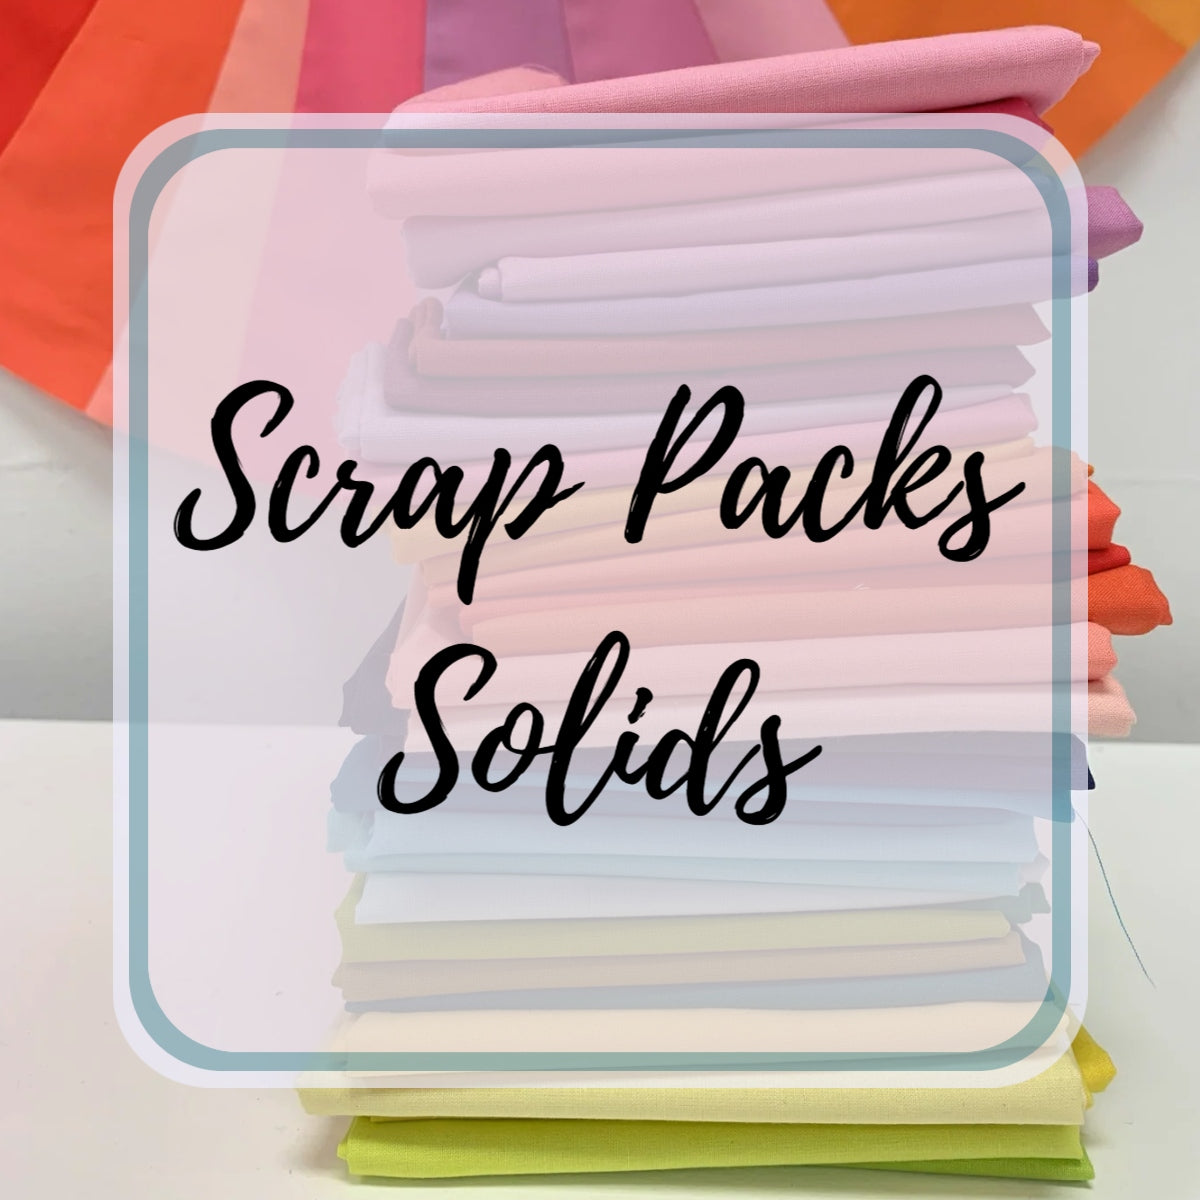 Solids Scrap Pack - 1 lb.